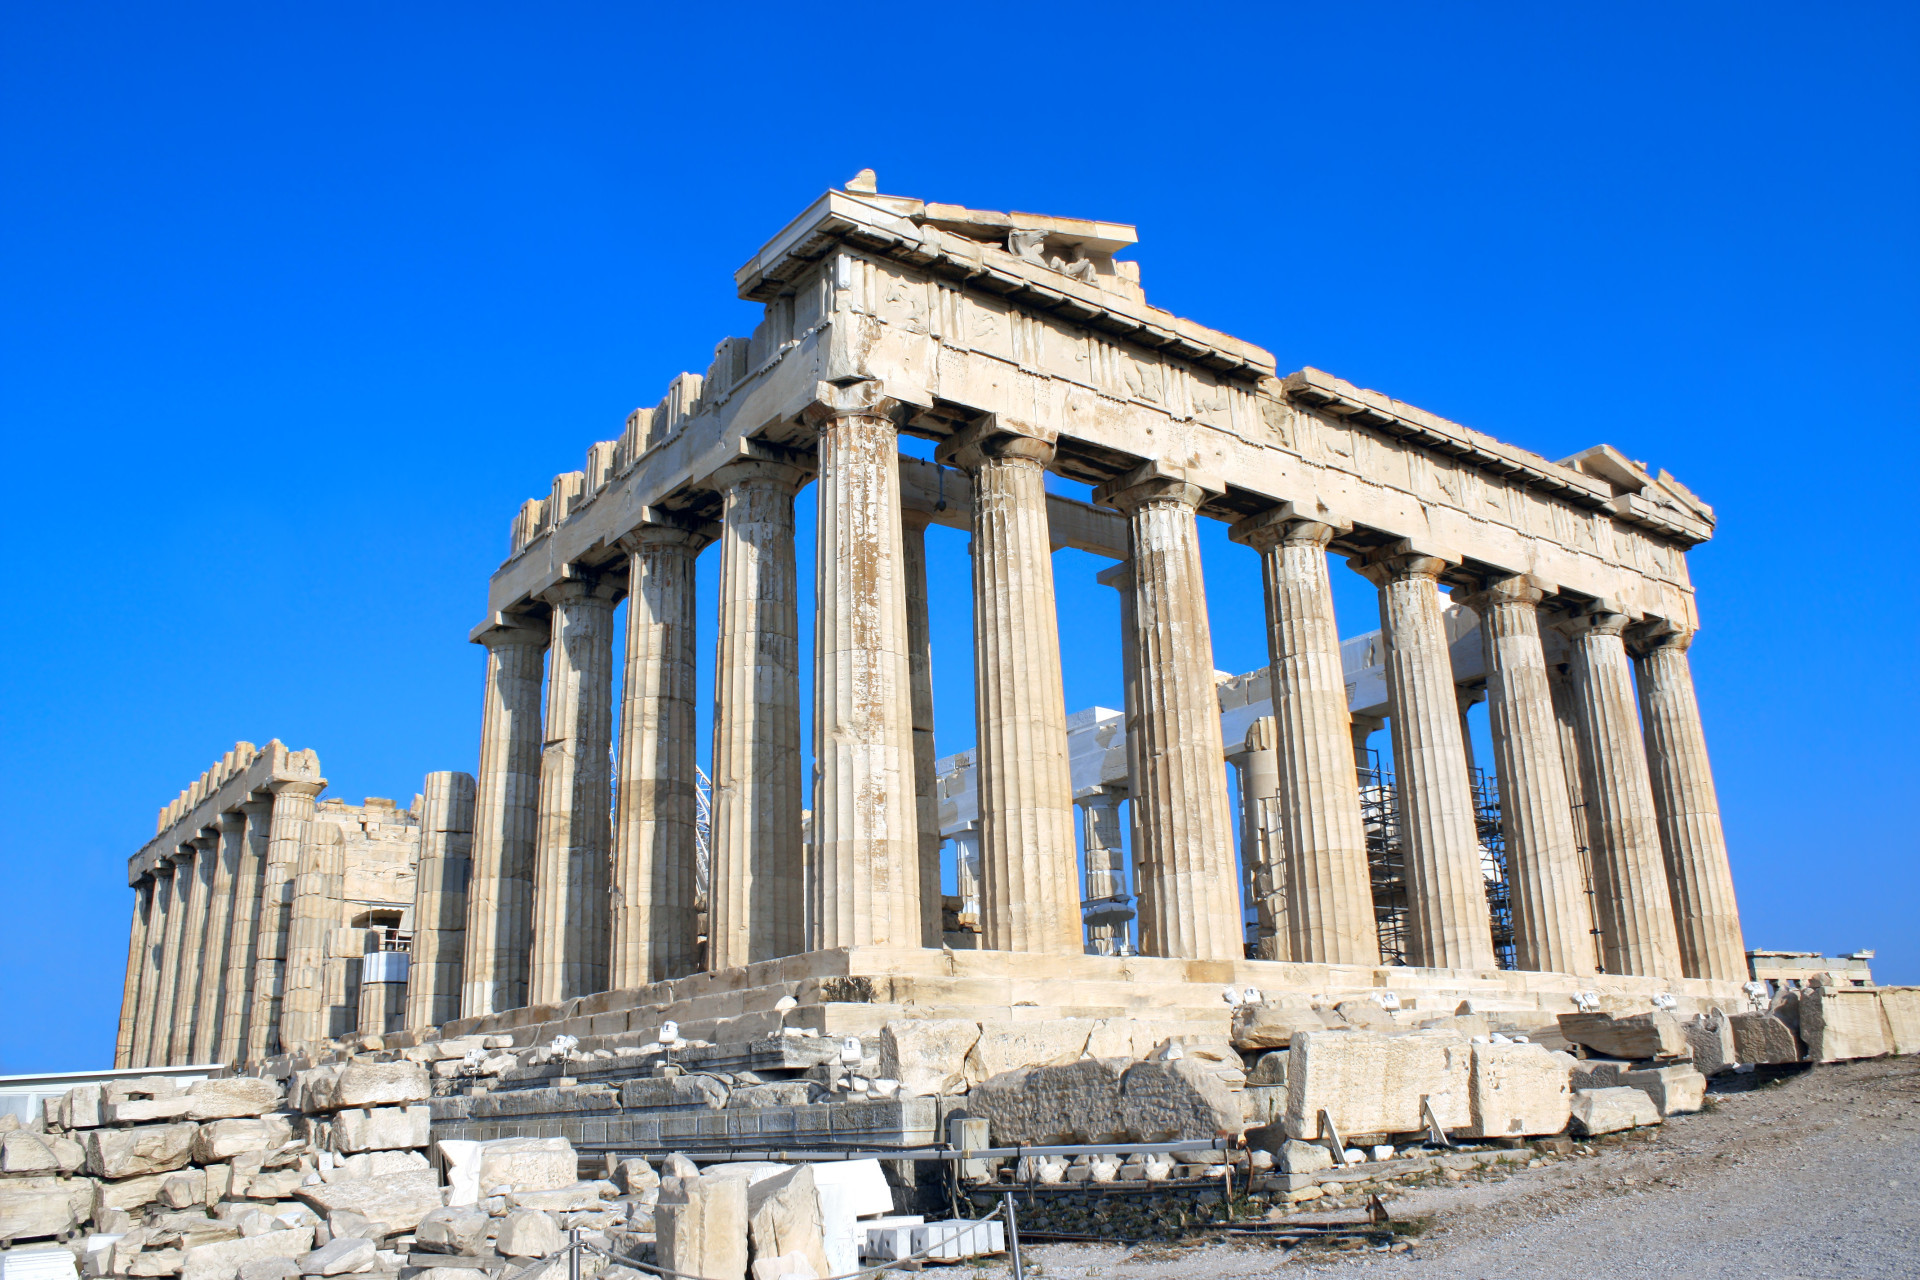 Vous aurez la chance d'y apercevoir l'un des plus imposants vestiges de l'Antiquité: le Parthénon, un temple dédié à la déesse Athéna.<p><a href="https://www.msn.com/fr-fr/community/channel/vid-7xx8mnucu55yw63we9va2gwr7uihbxwc68fxqp25x6tg4ftibpra?cvid=94631541bc0f4f89bfd59158d696ad7e">Suivez-nous et accédez tous les jours à du contenu exclusif</a></p>